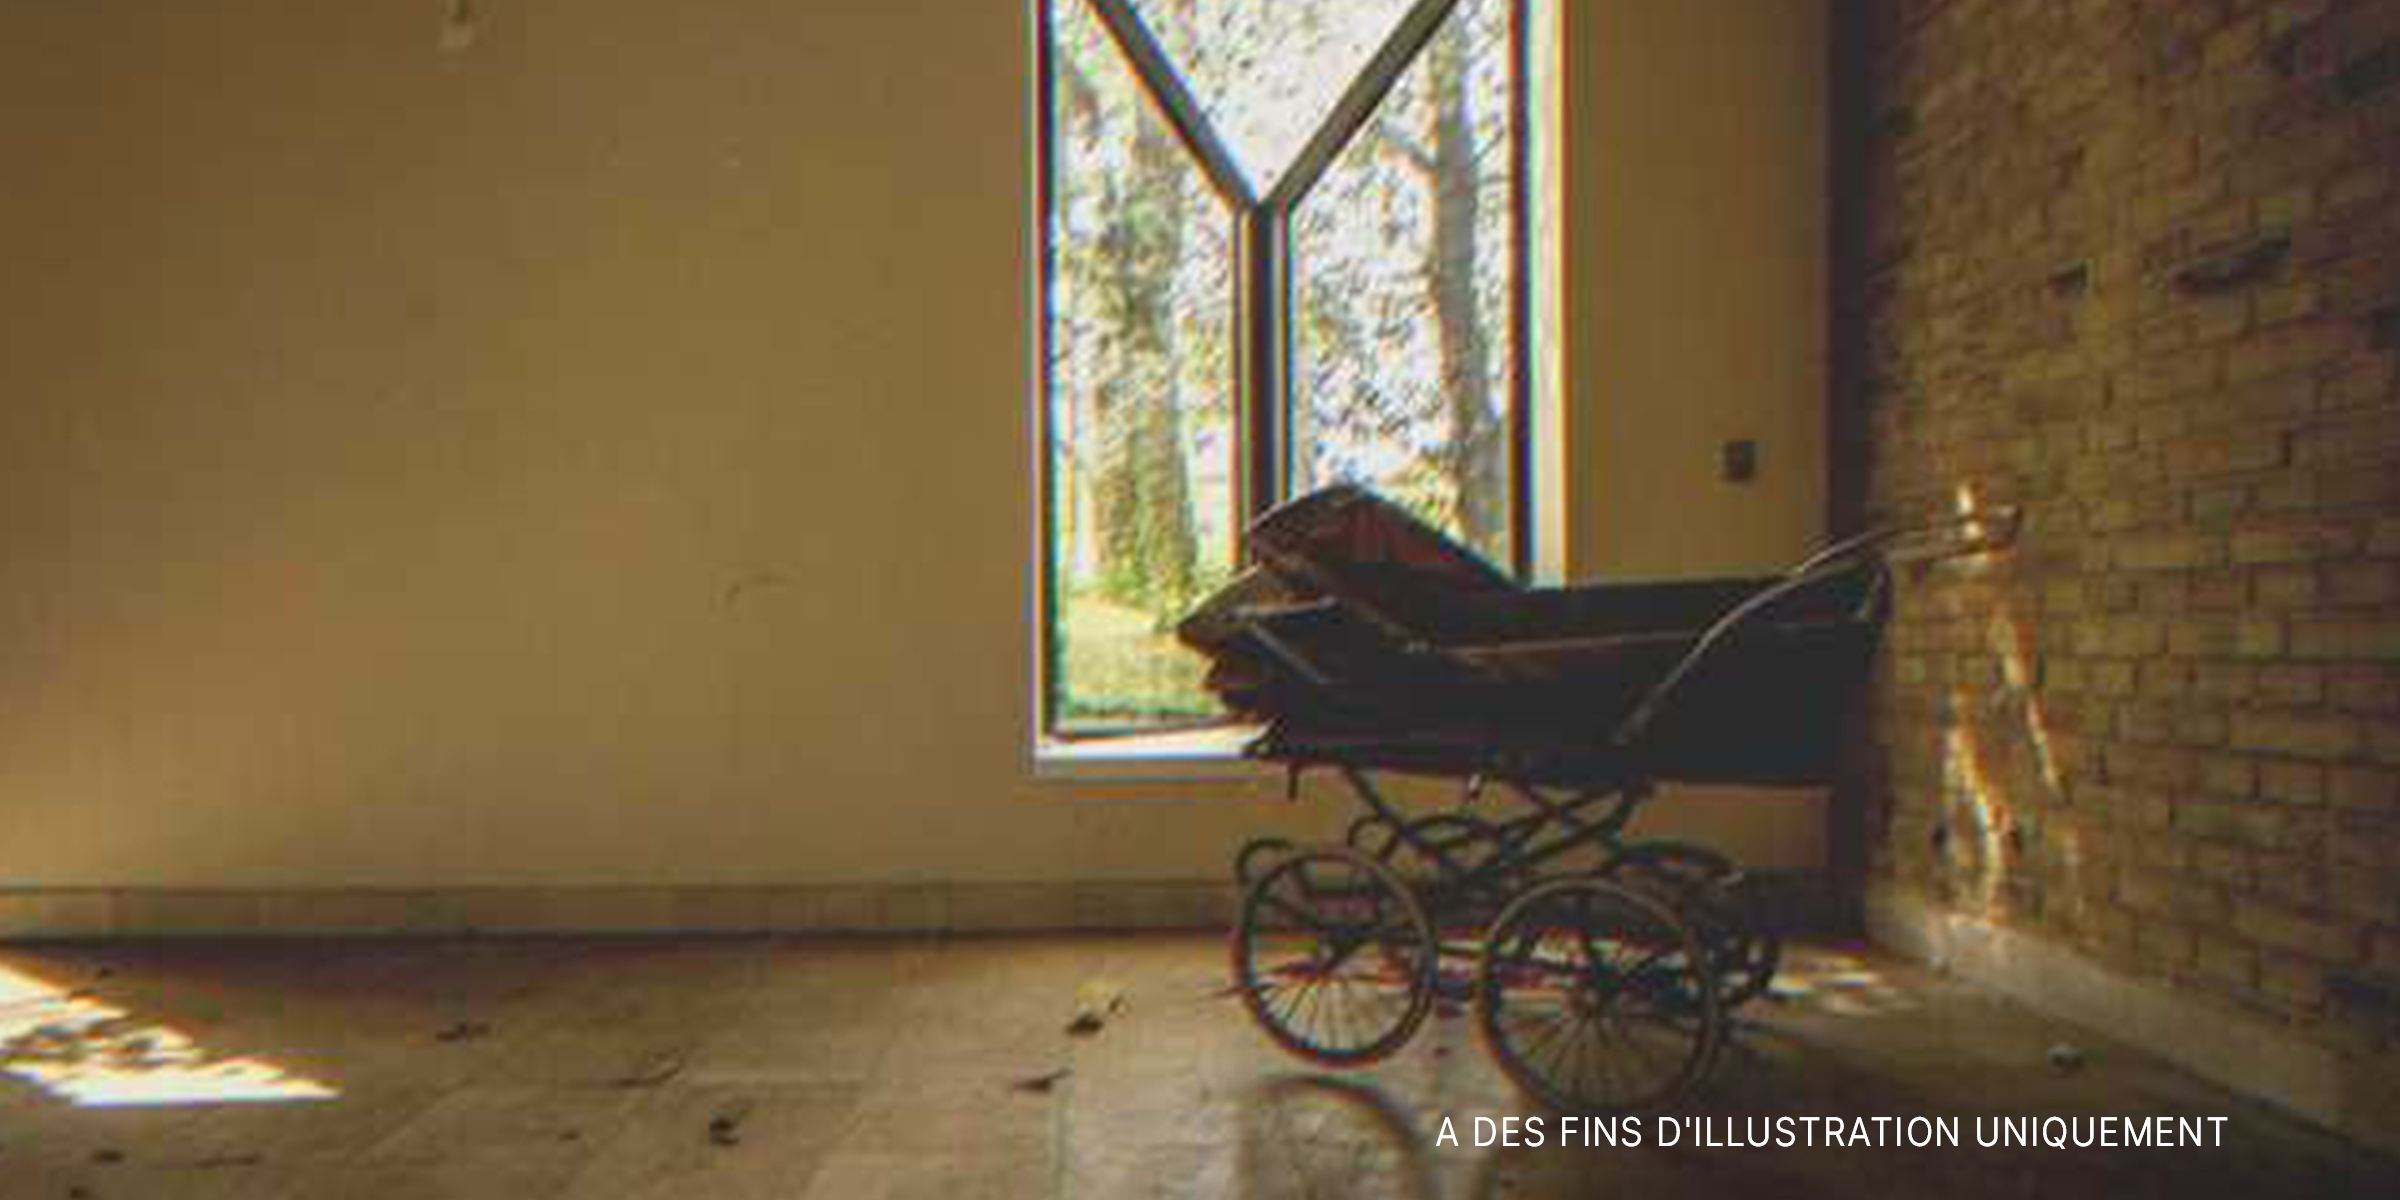 Une vieille poussette dans une maison abandonnée | Source : Flickr/olavXO